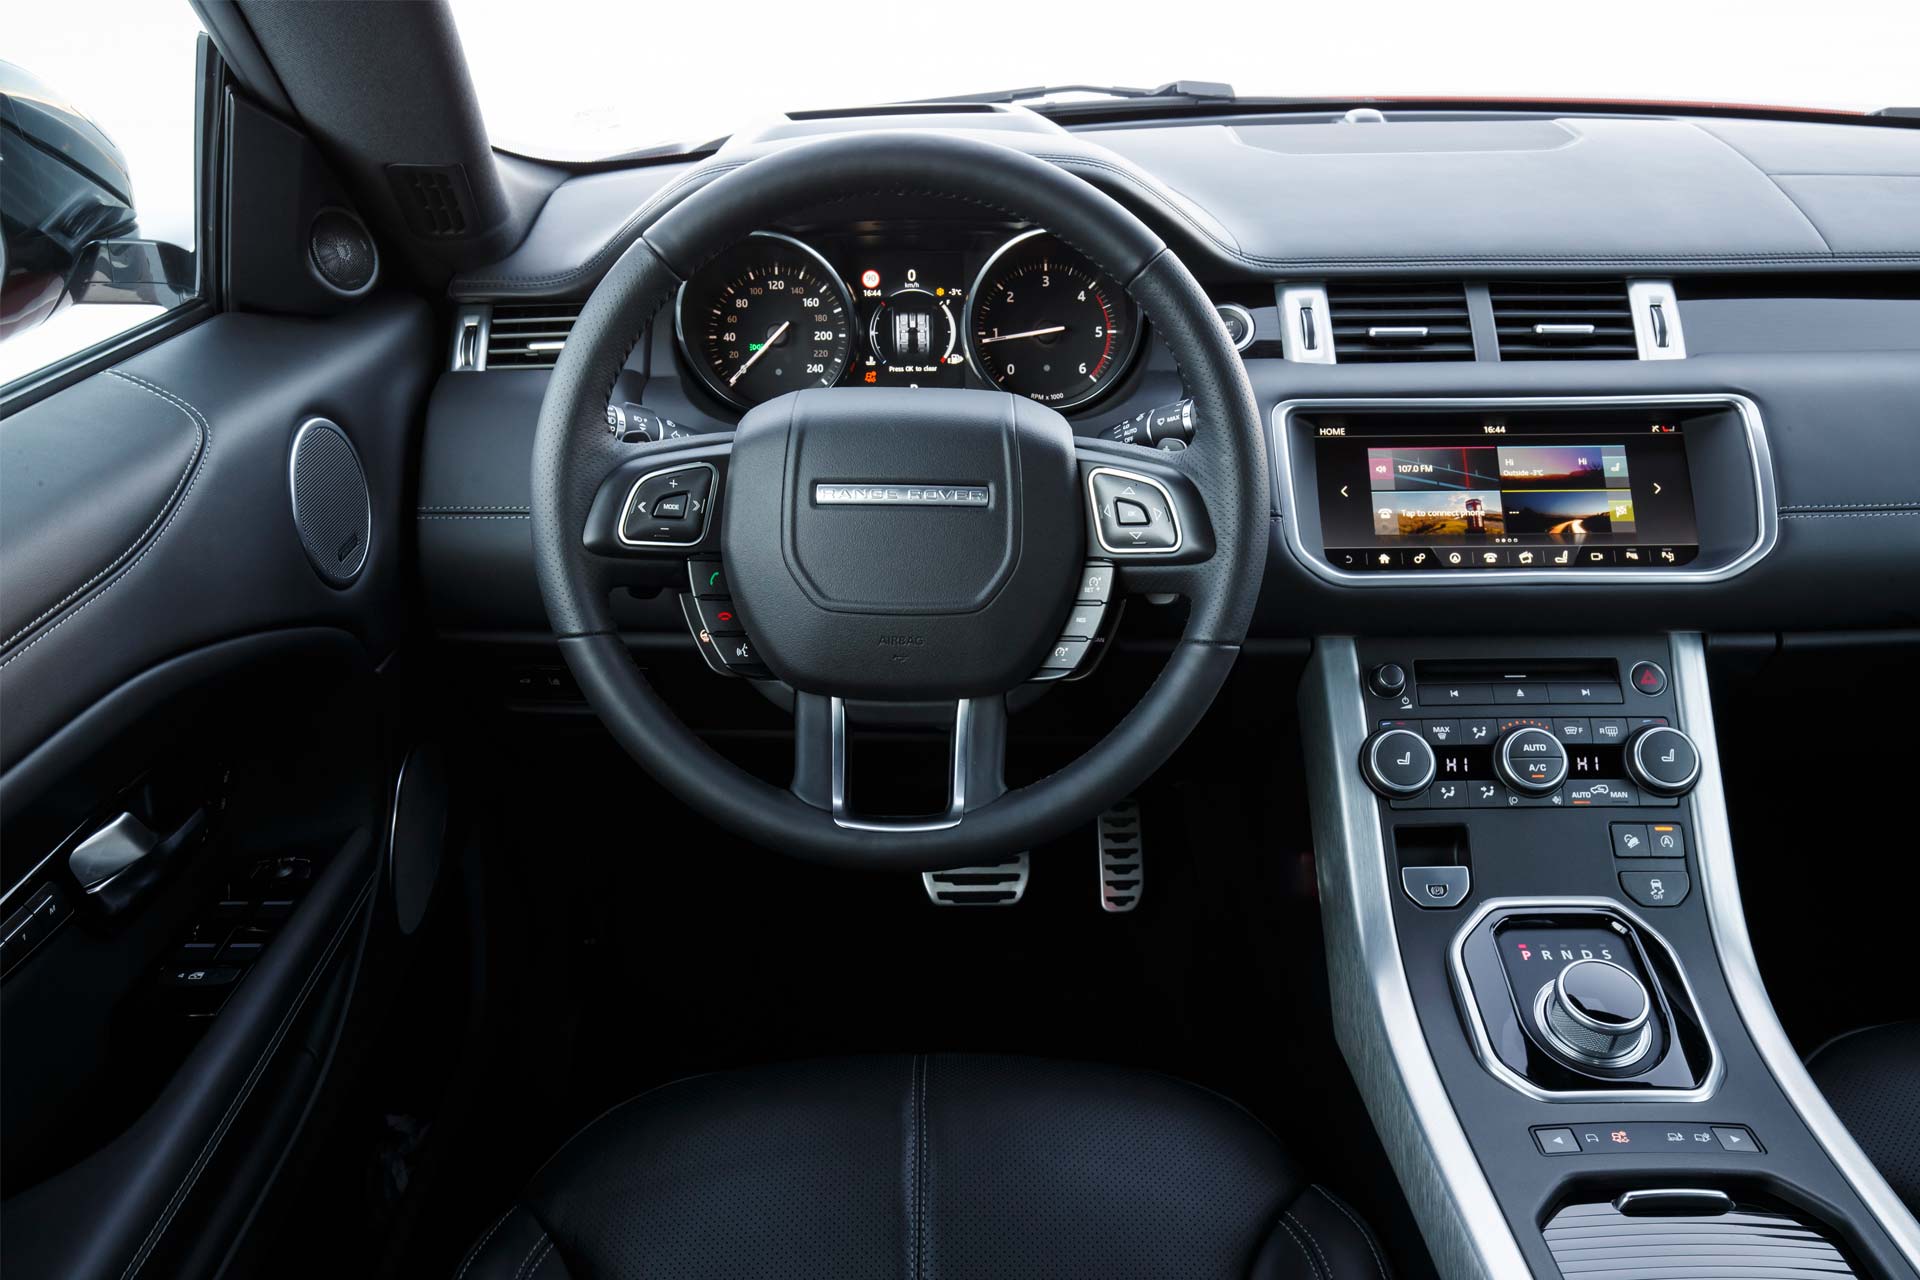 Range-Rover-Evoque-Convertible-interior